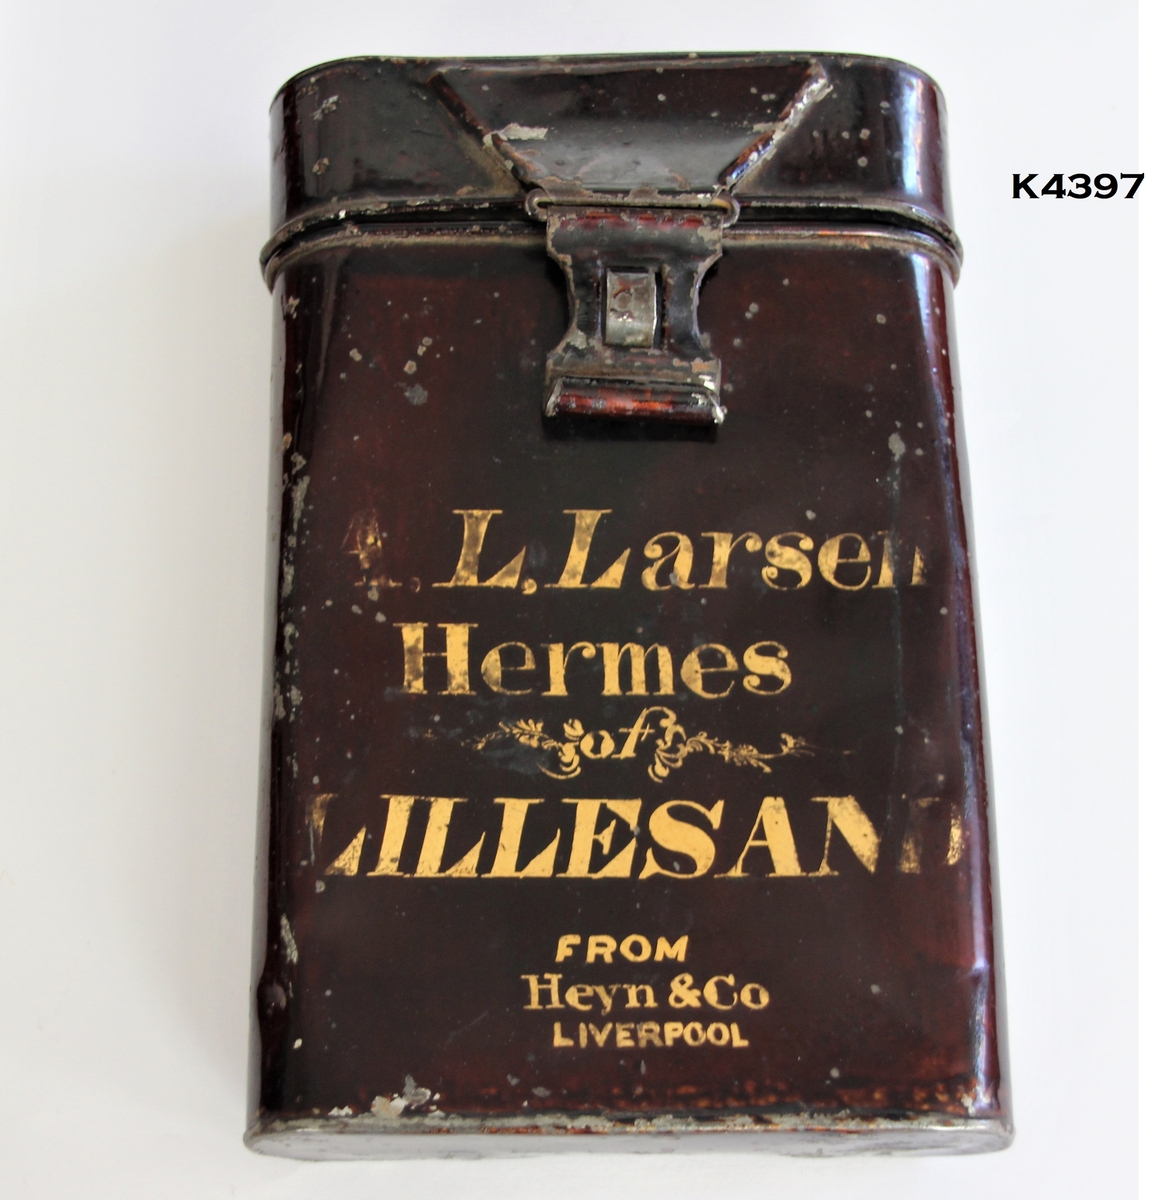 Brevboks: Avrundete hjørner. Låsmekanisme for lokket. 
Tekst i gullskrift: A.L.Larsen. Hermes of Lillesand. FROM Heyn & Co. Liverpool.